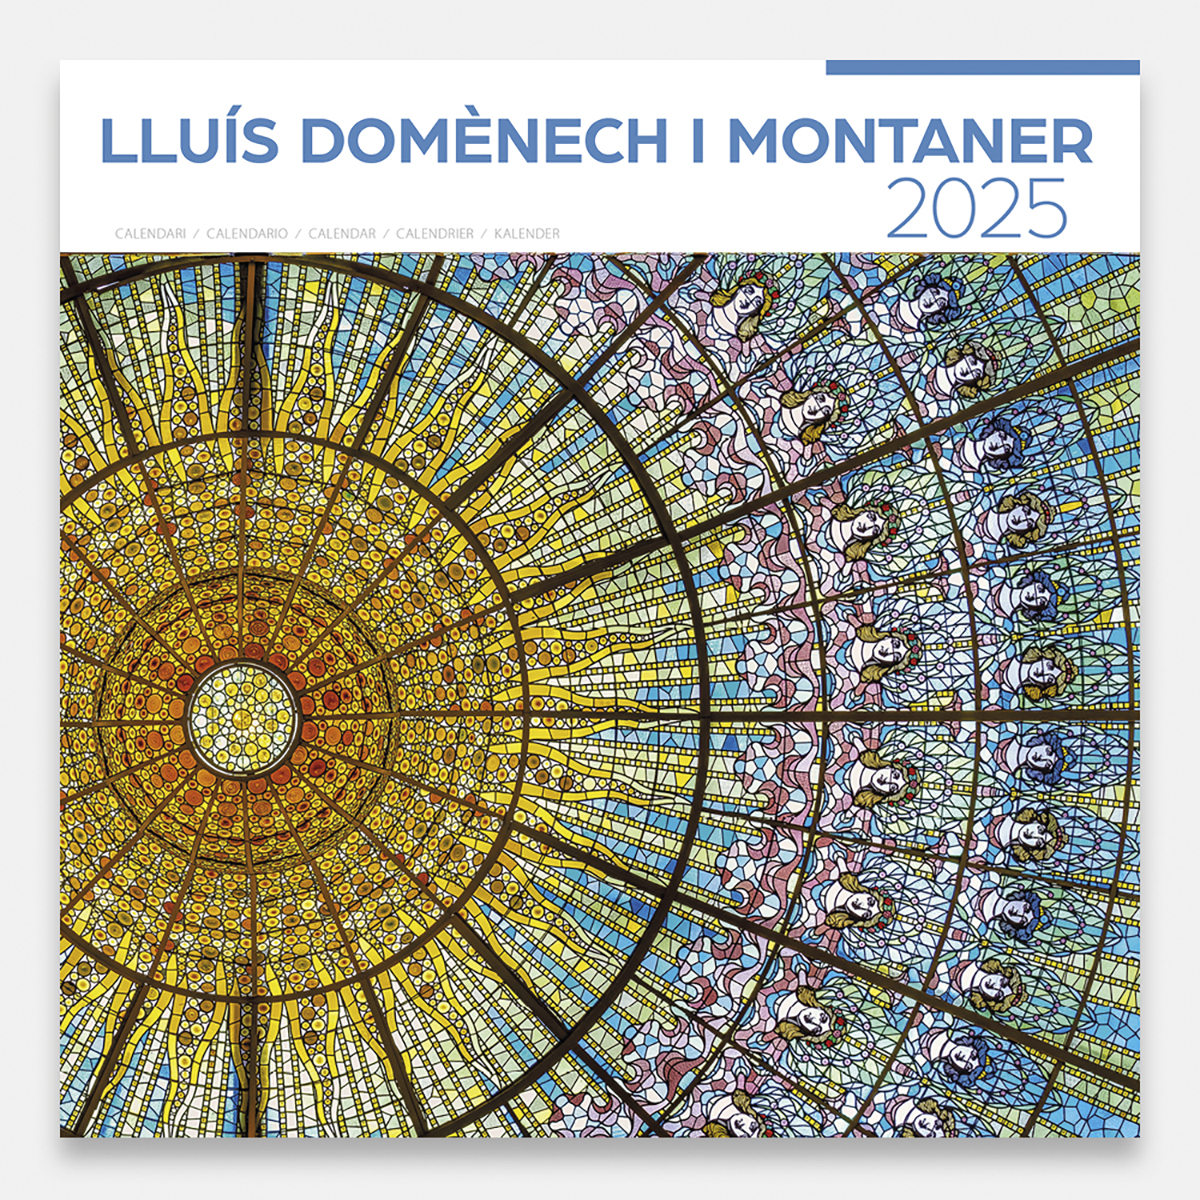 Calendario 2025 Lluís Domènech i Montaner (A) 25dmg1a calendario pared 2025 lluis domenech